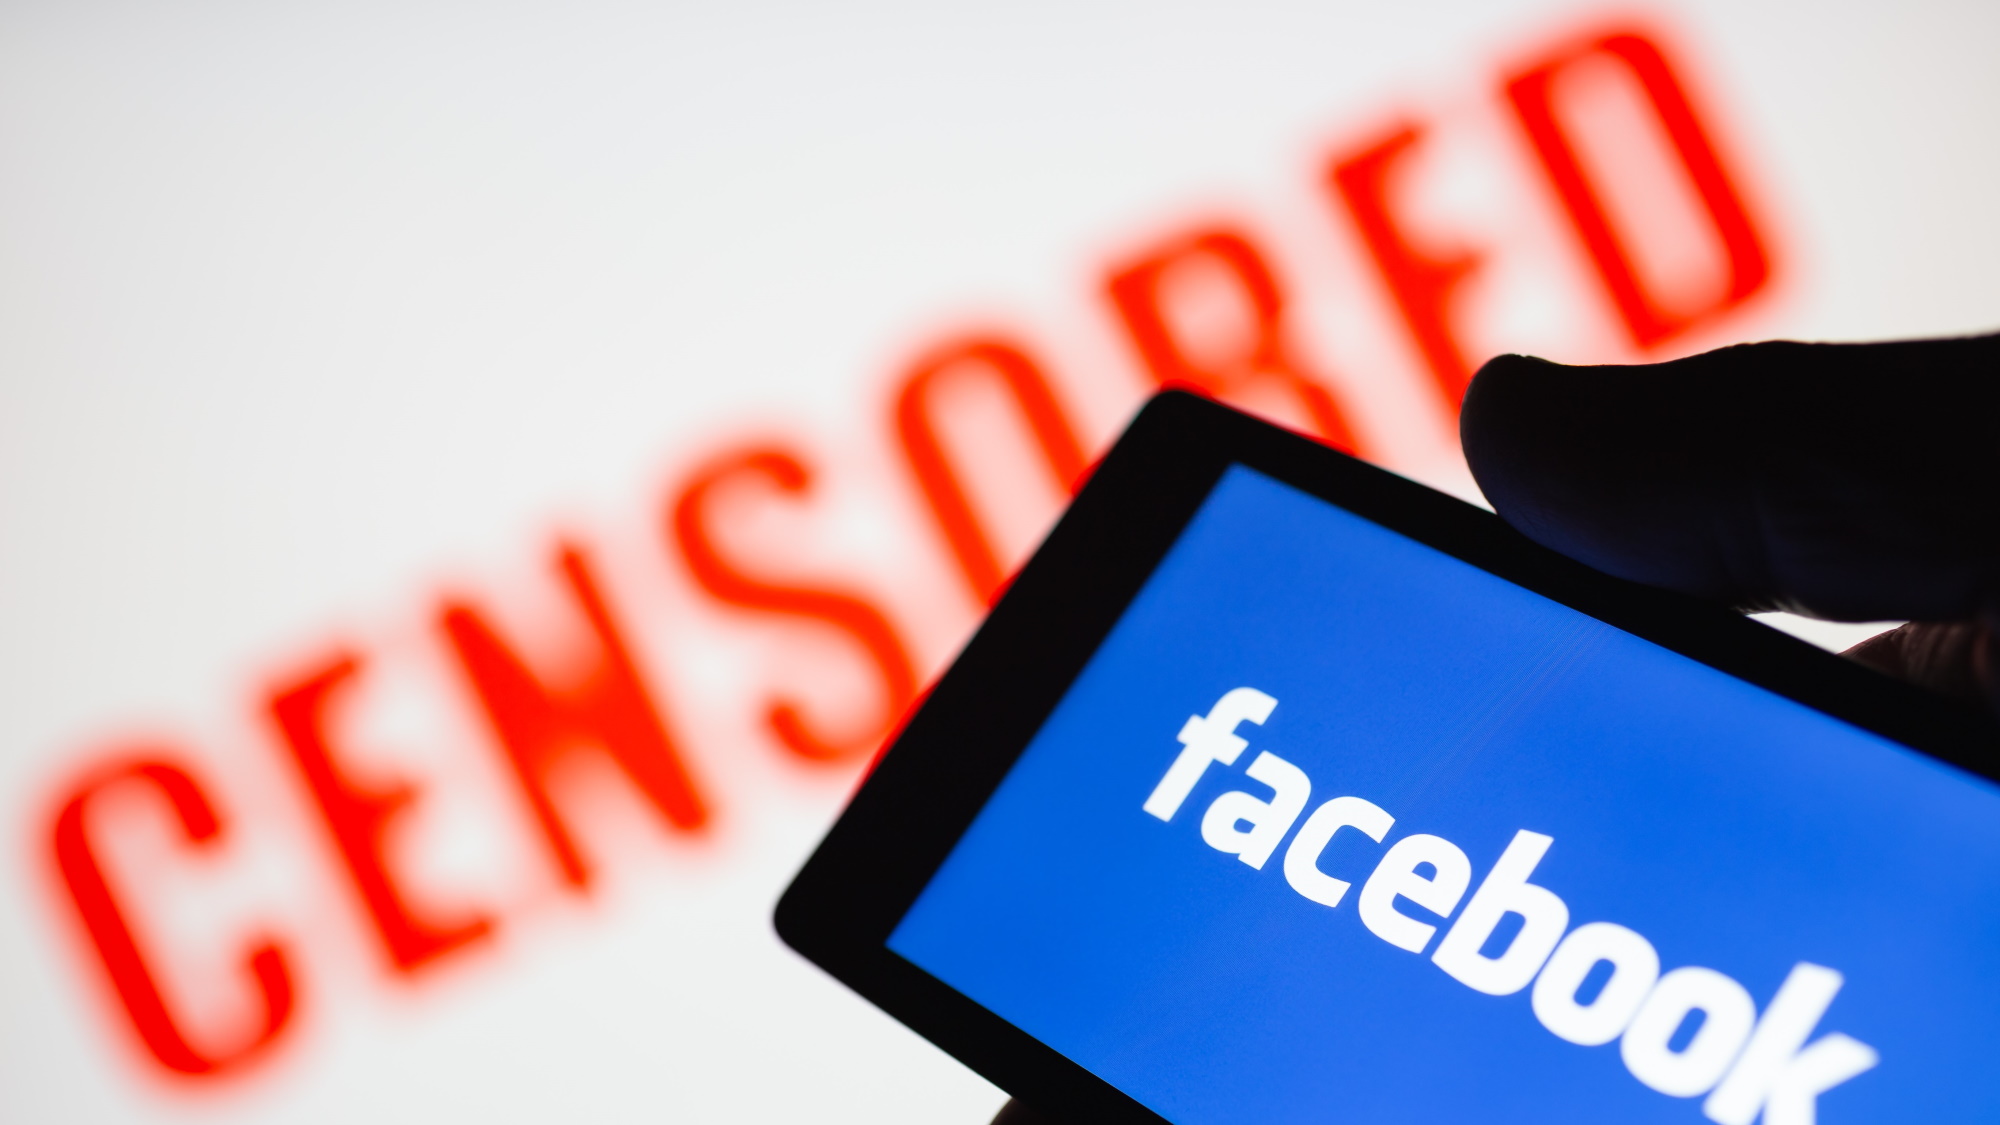 Smartphone en main affichant le logo de Facebook.  Texte censuré rouge flou sur fond